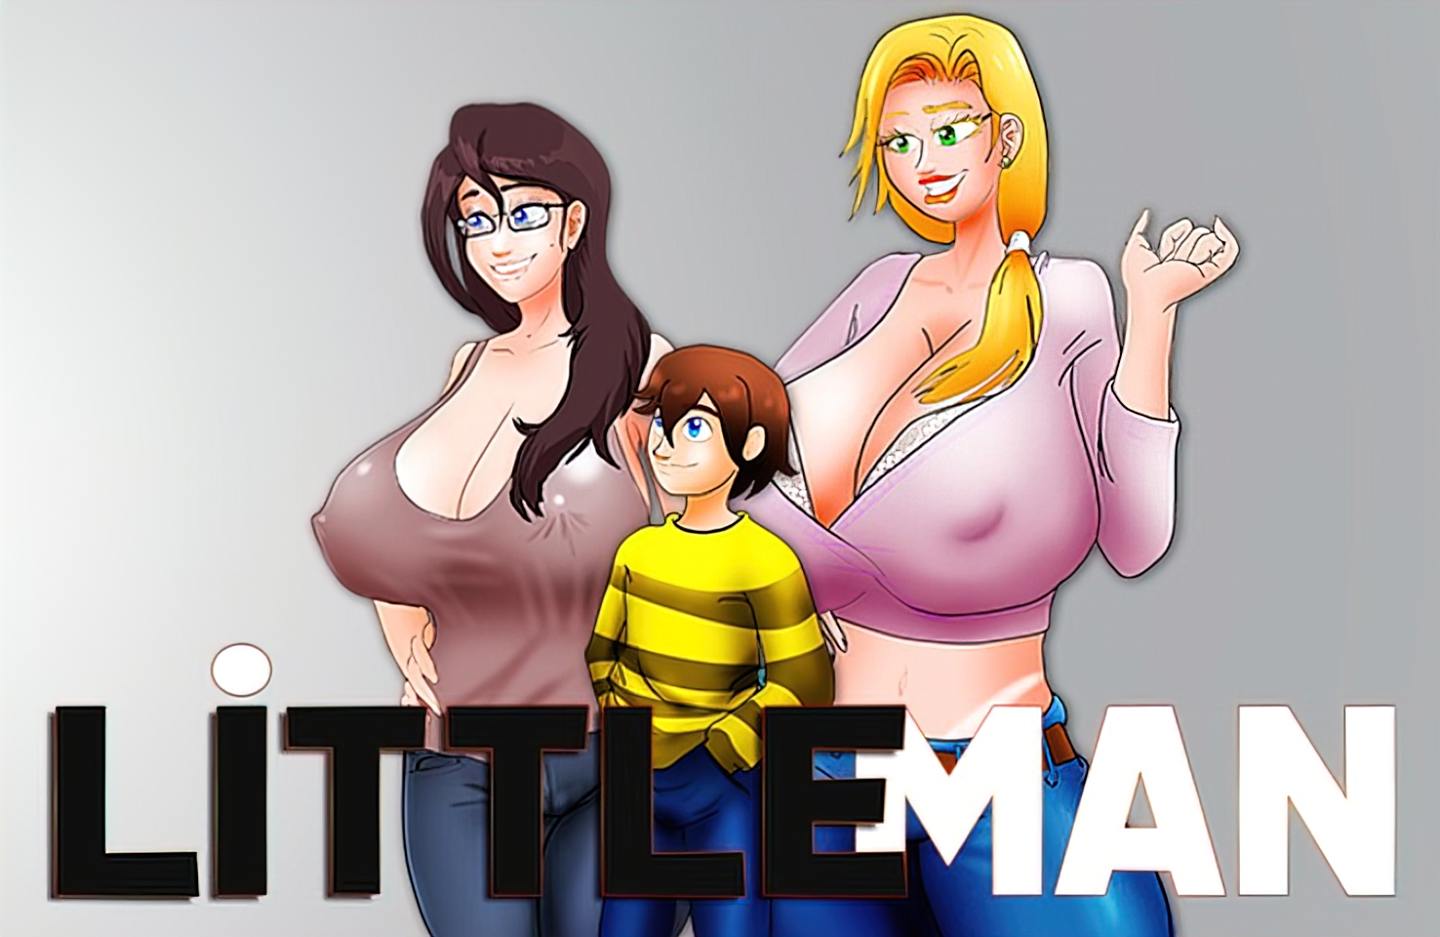 Littleman porn game